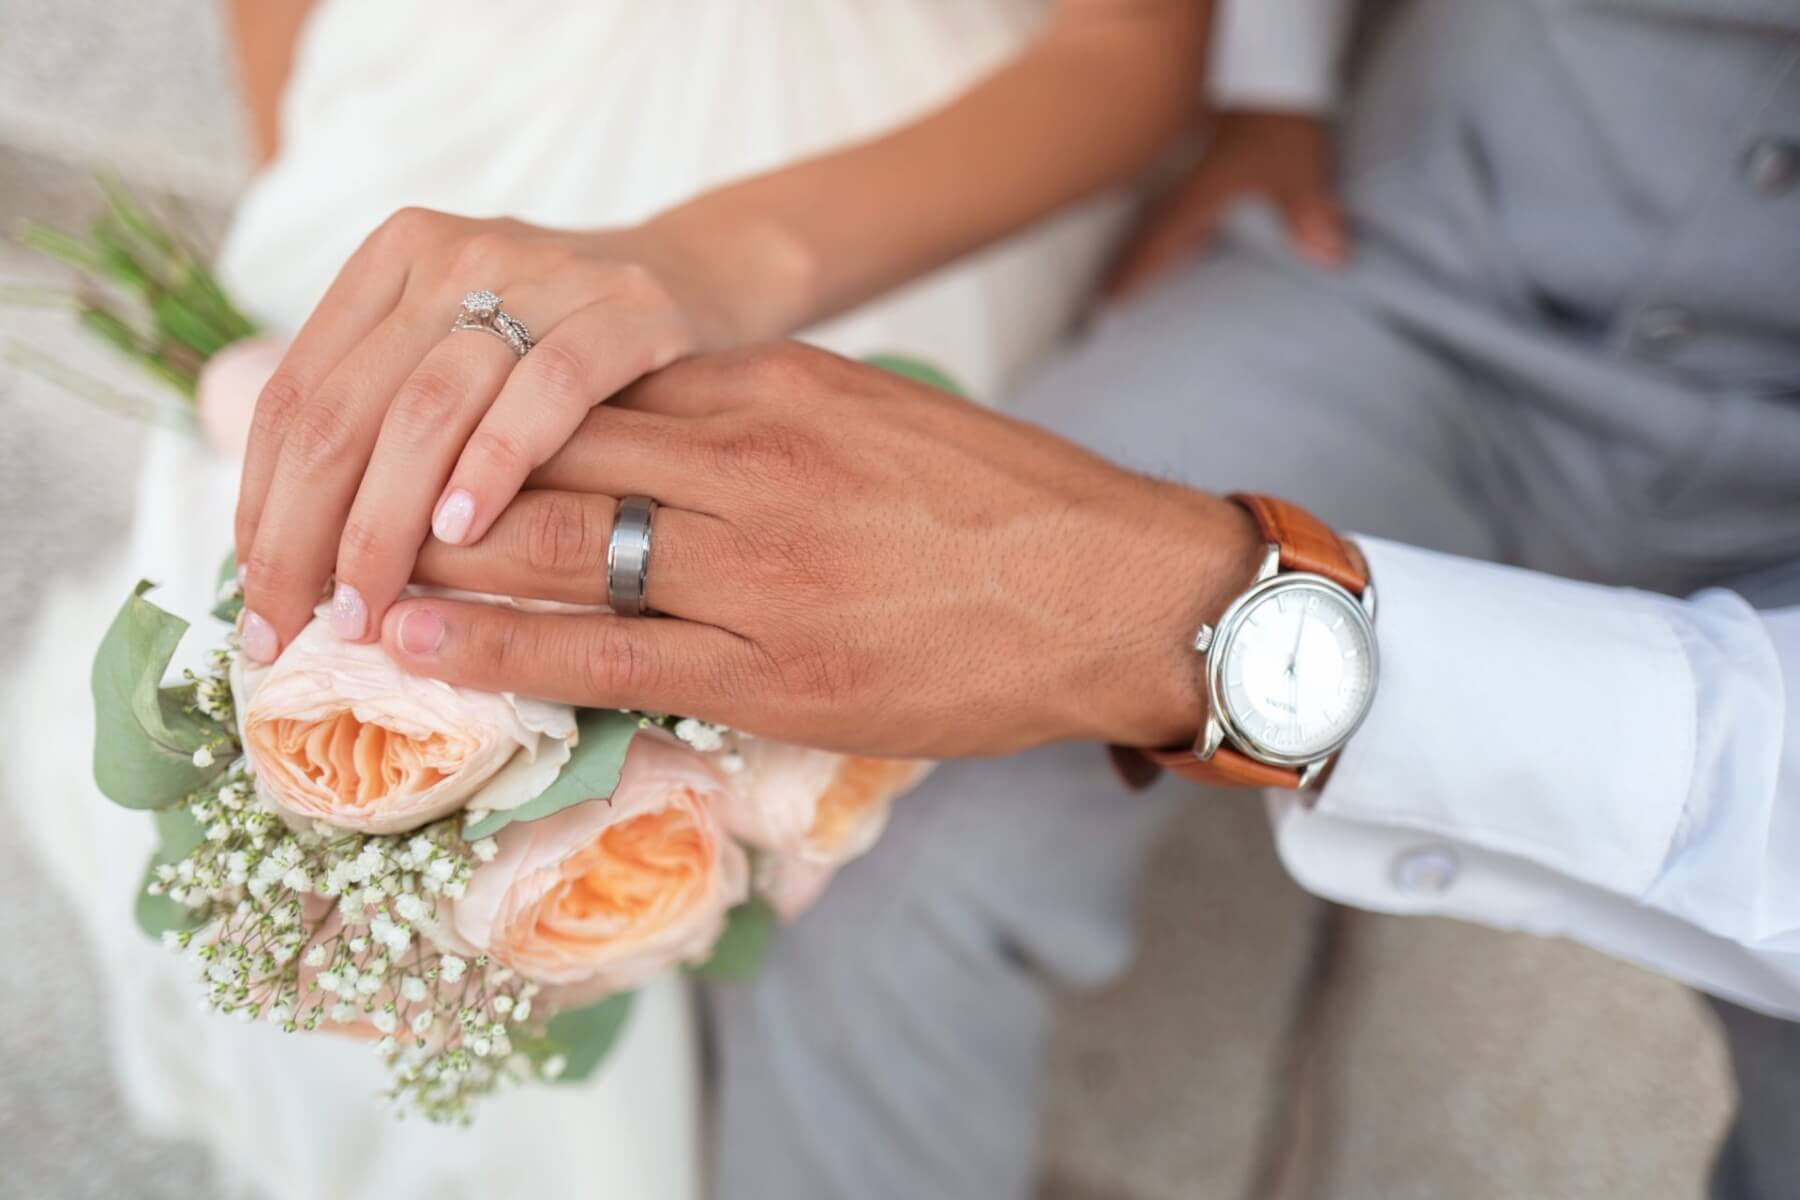 バツイチ 子持ちにおすすめの結婚相談所4選 再婚の婚活事情や気をつける点もご紹介 Promarry 1年以内に結婚したい 人のための結婚相談所ポータルサイト